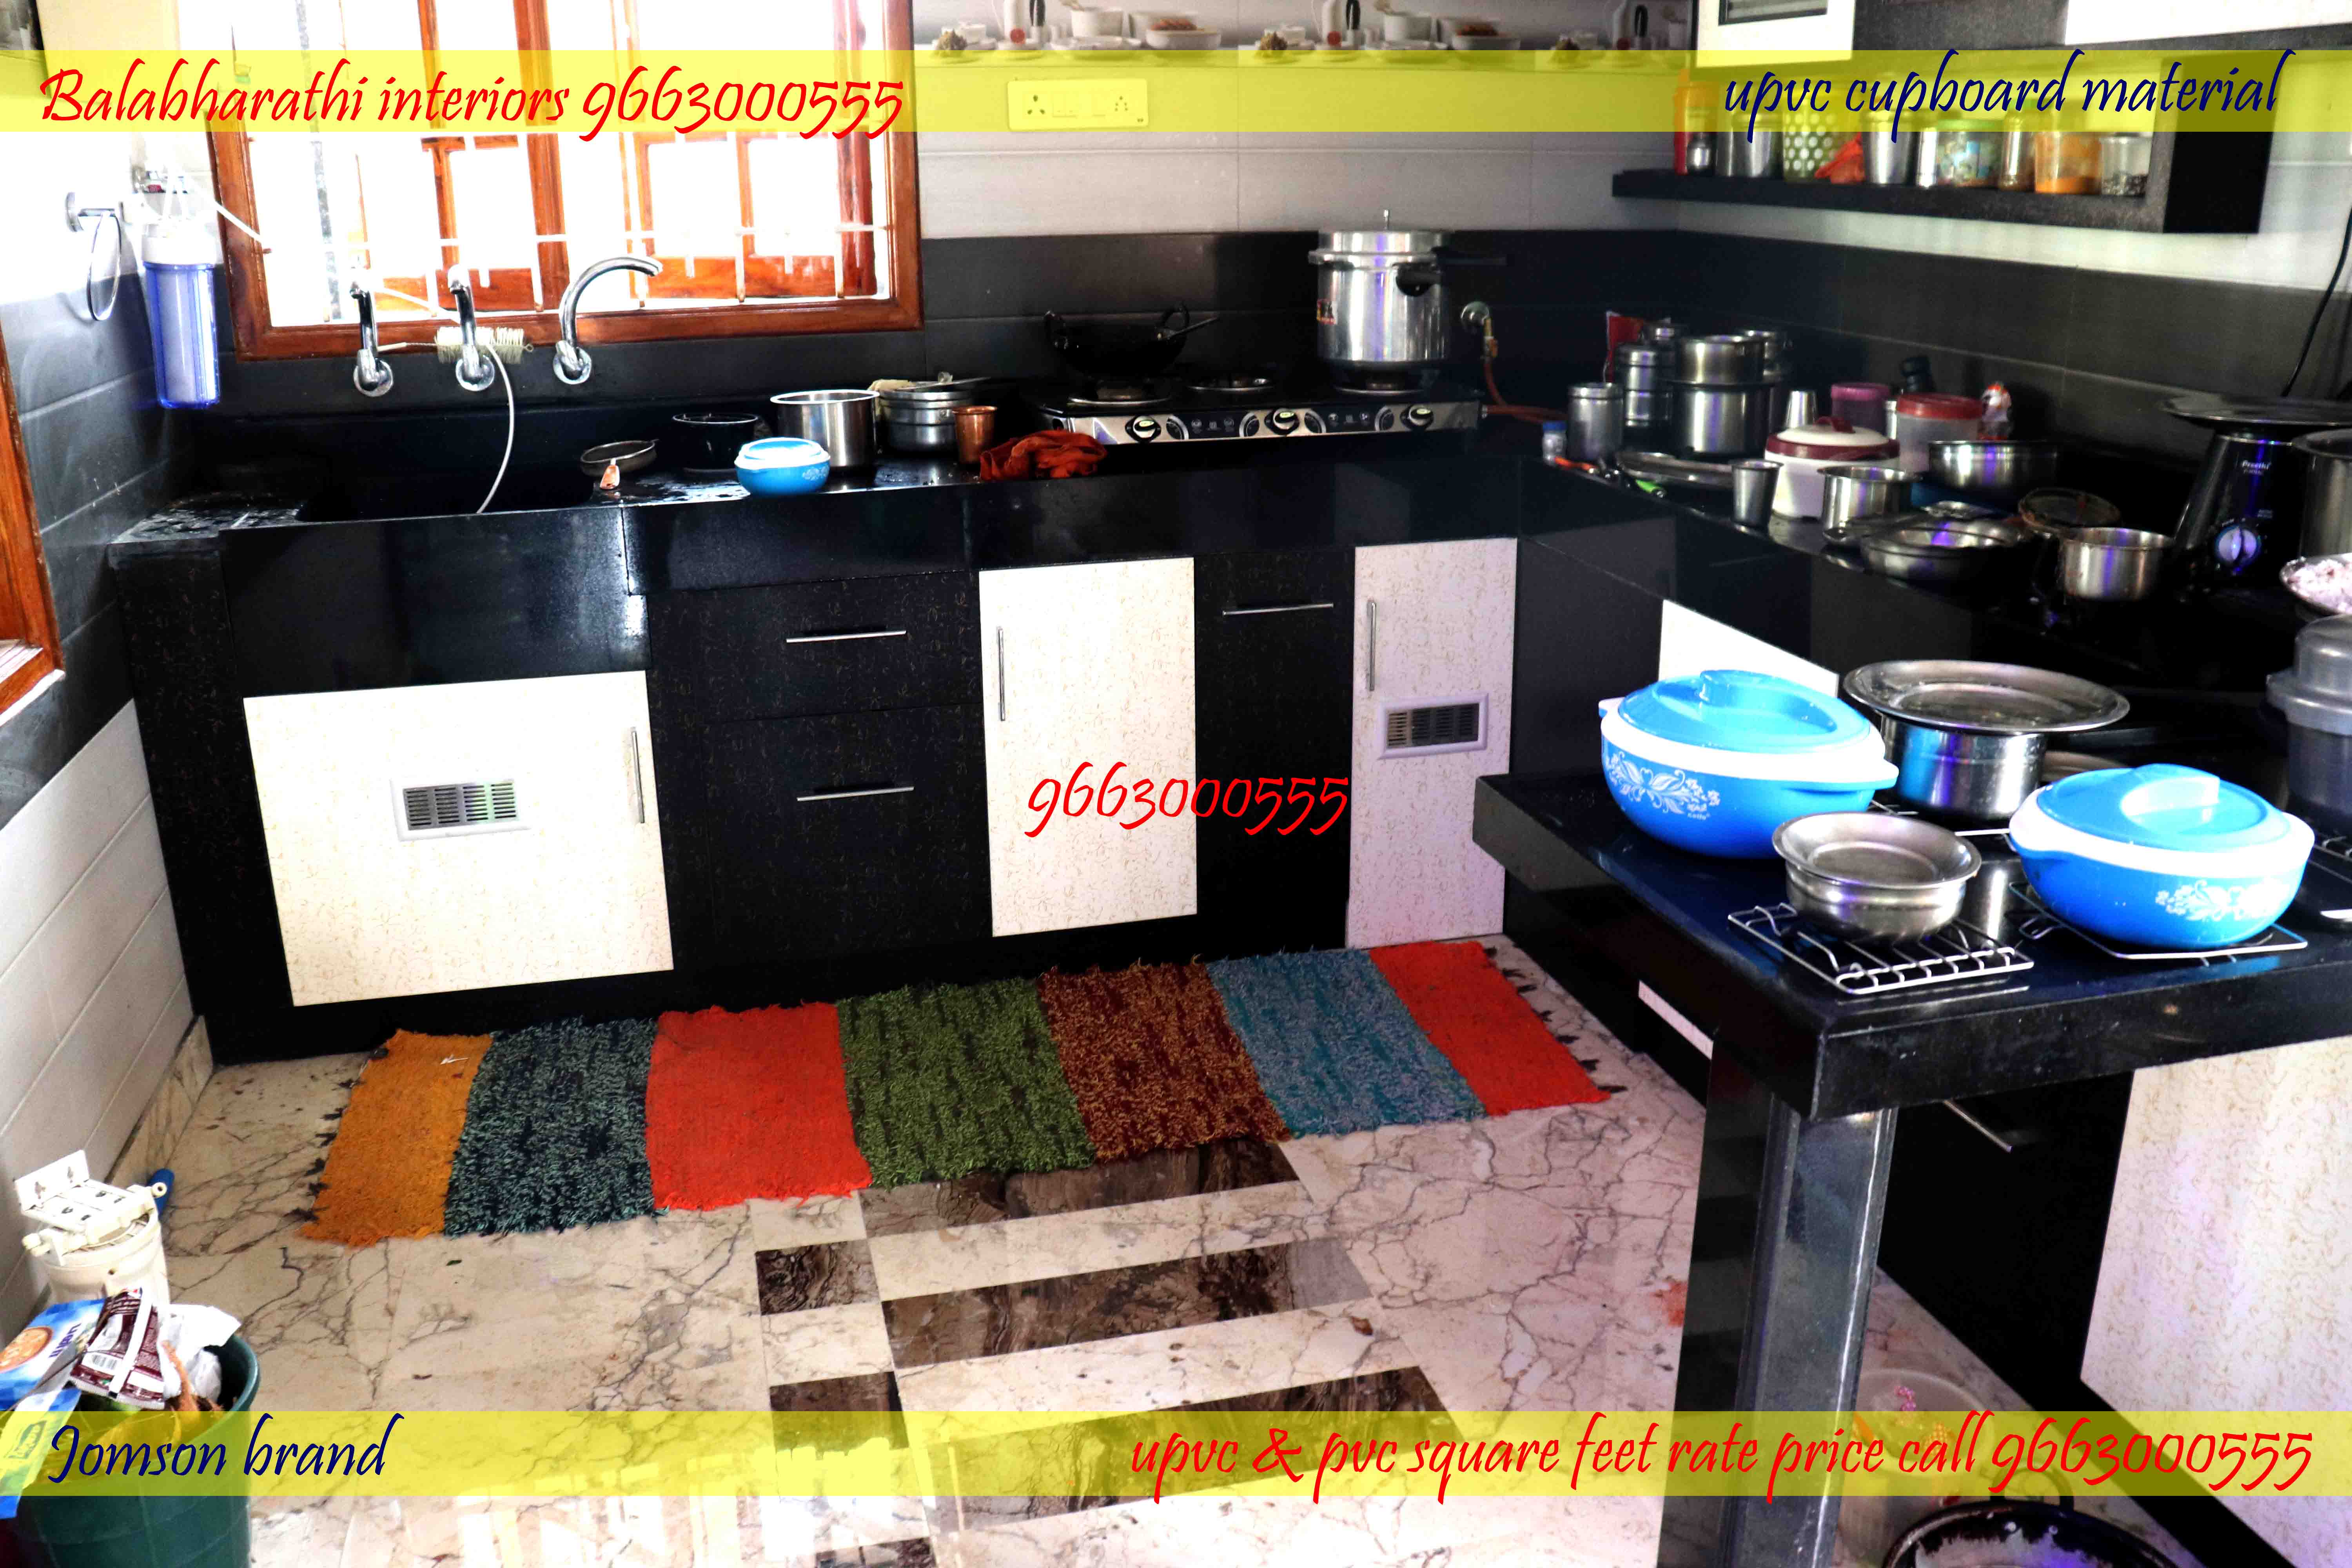 upvc modular kitchen